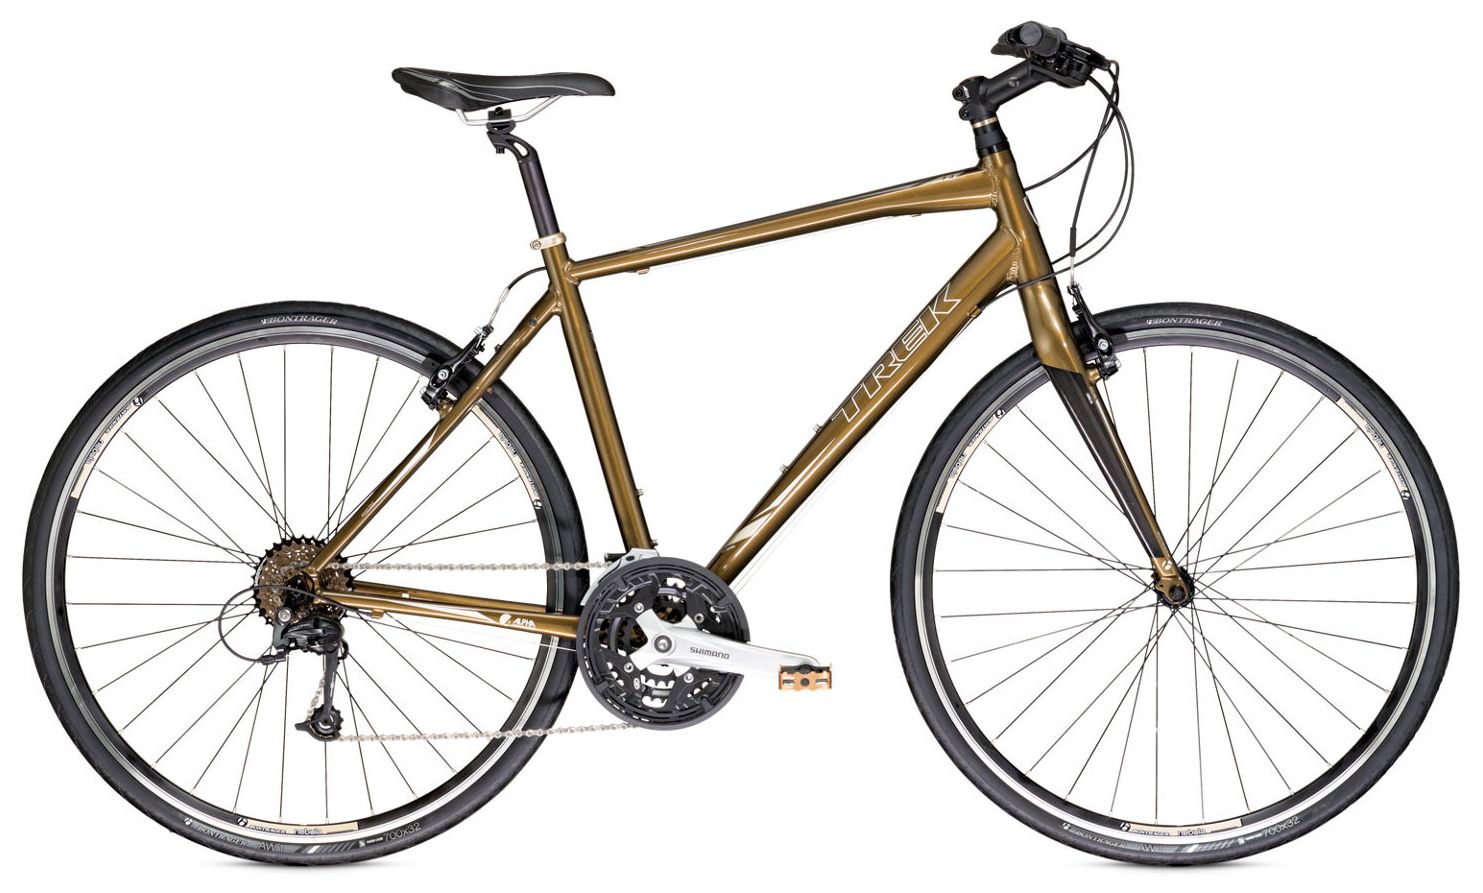  Отзывы о Велосипеде Trek 7.4 FX 2013